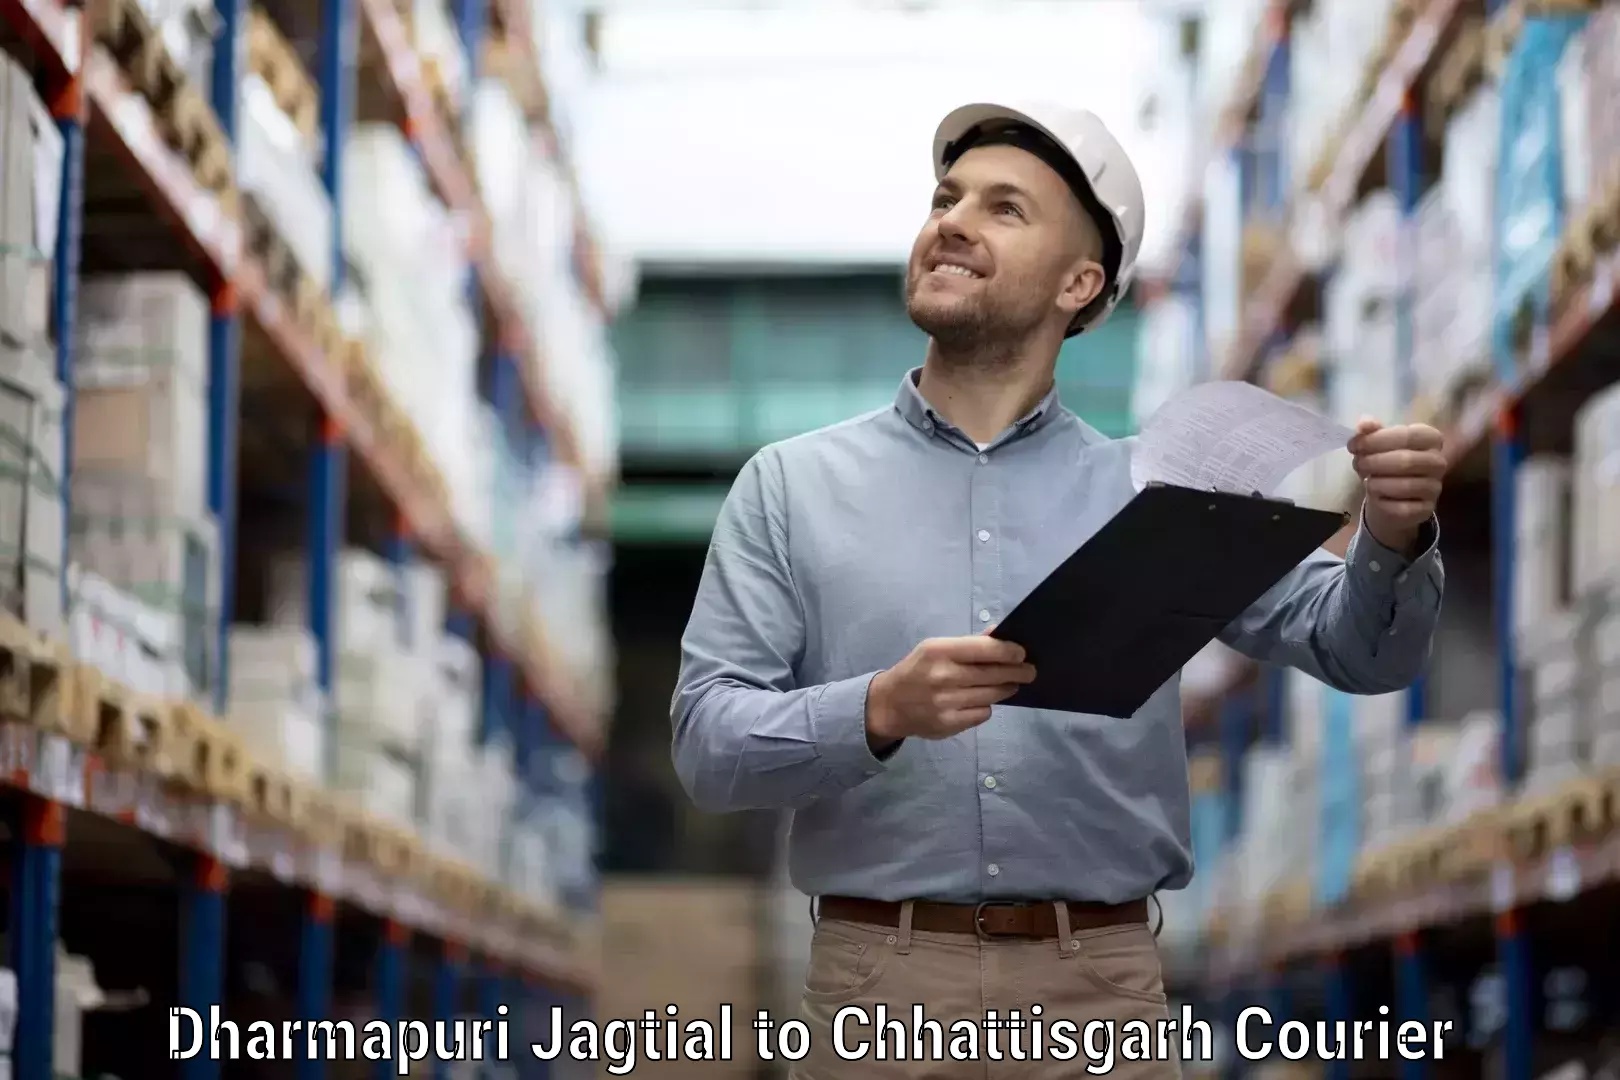 Long distance courier Dharmapuri Jagtial to Jaijaipur